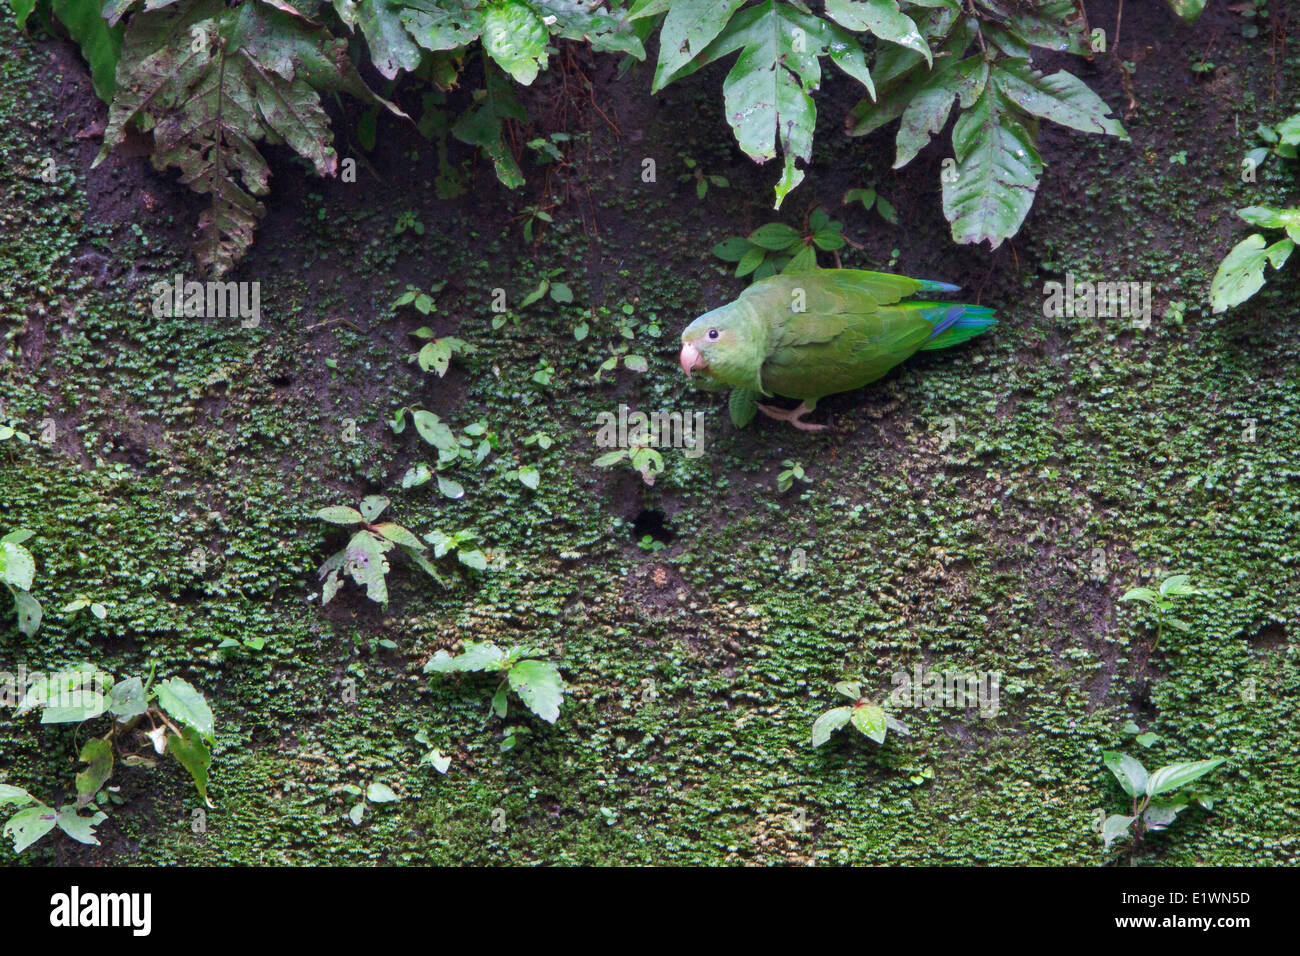 El cobalto-winged Parakeet (Brotogeris cyanoptera) en una collpa en Ecuador, América del Sur. Foto de stock